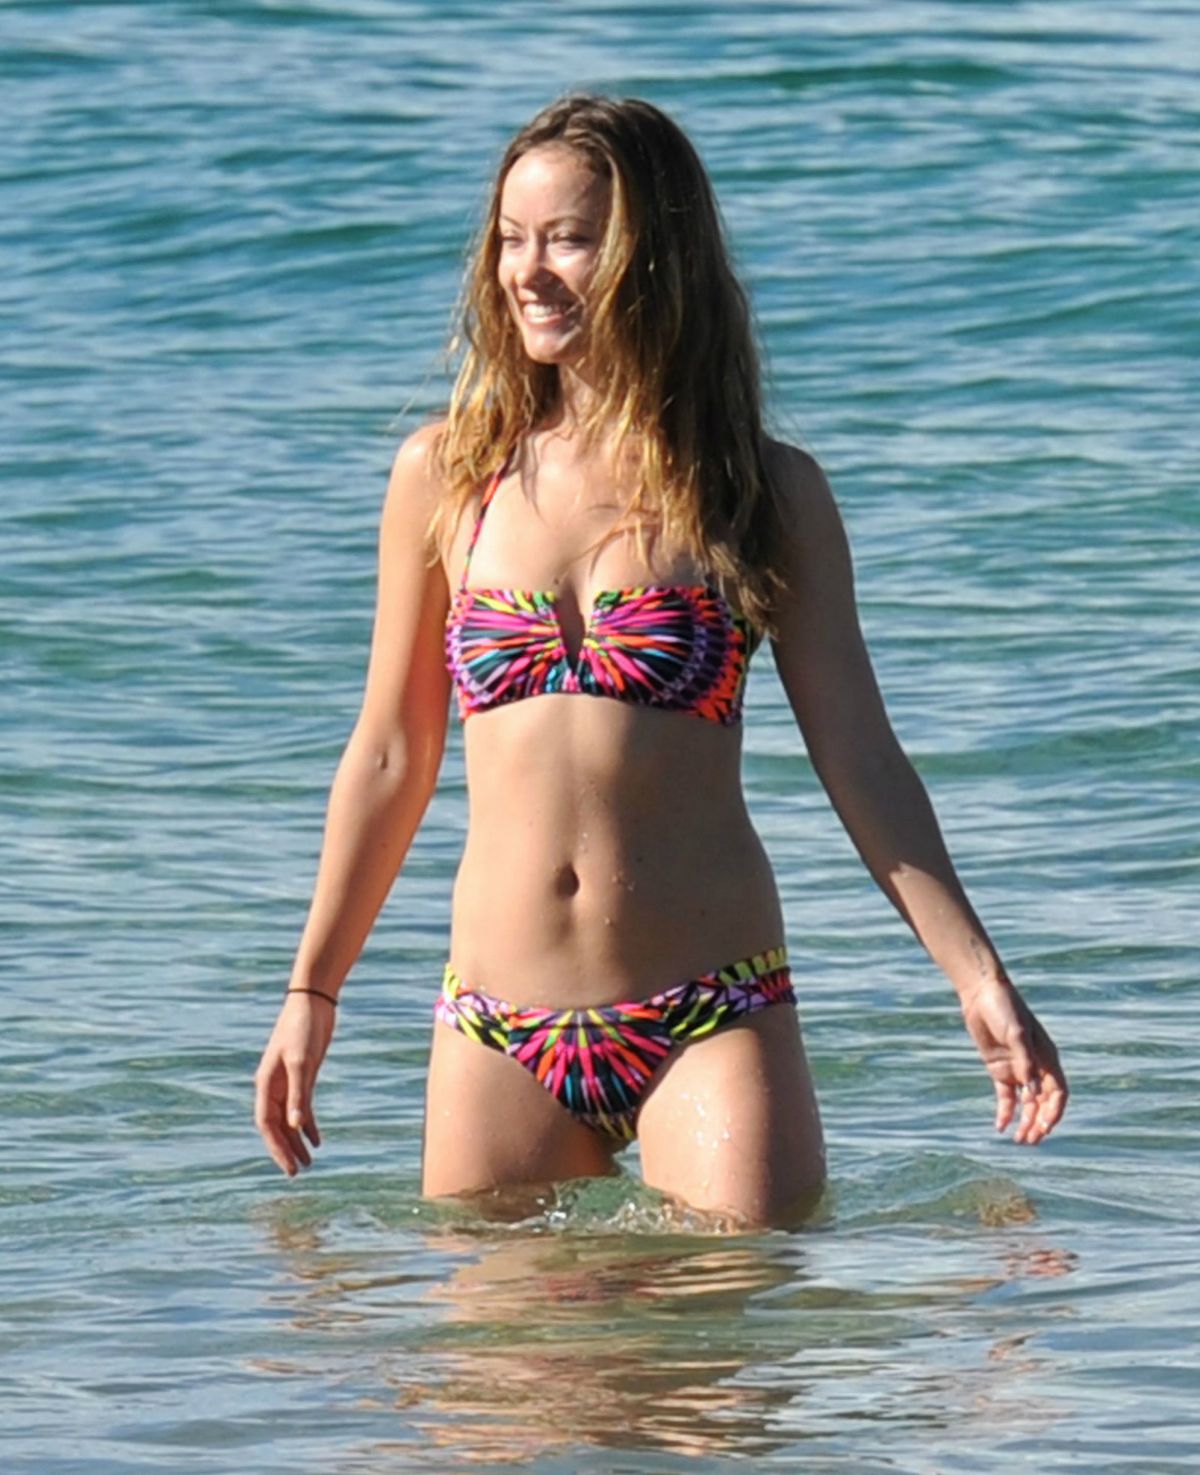 OLIVIA WILDE in Bikini on the Beach in Hawaii.